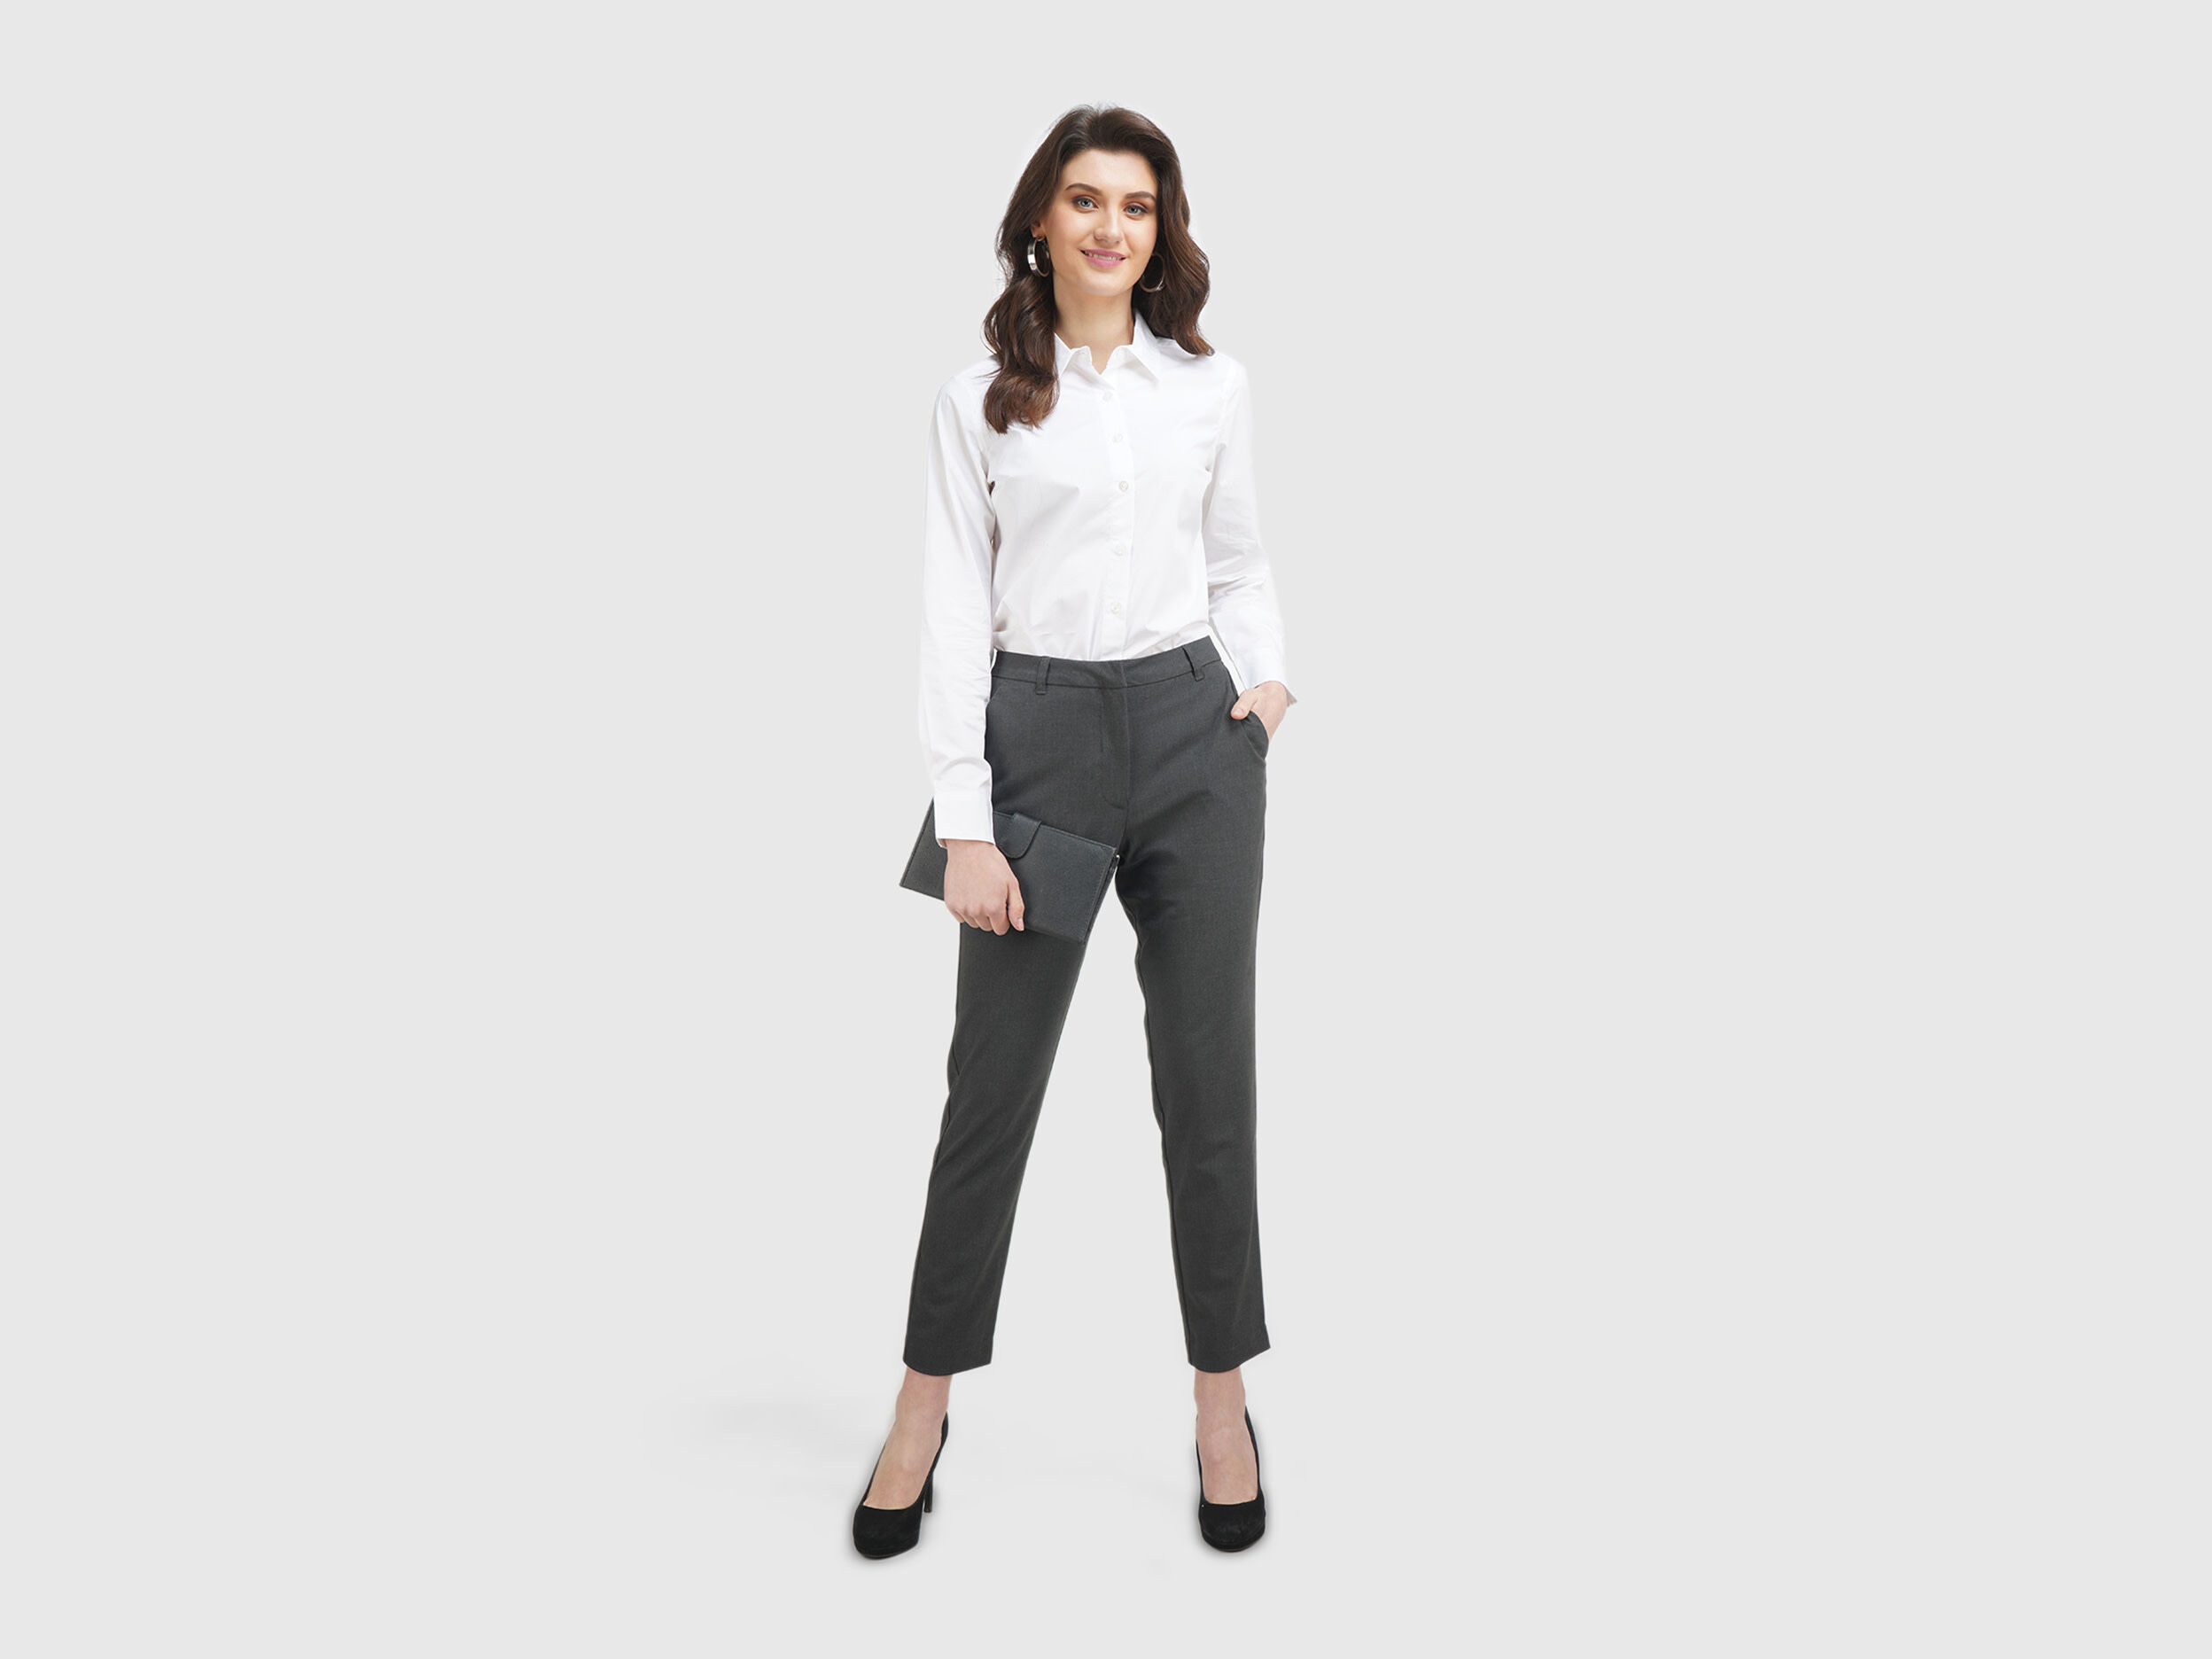 Buy Gold Straight Fit Plus Size Trouser Pants Online - Aurelia